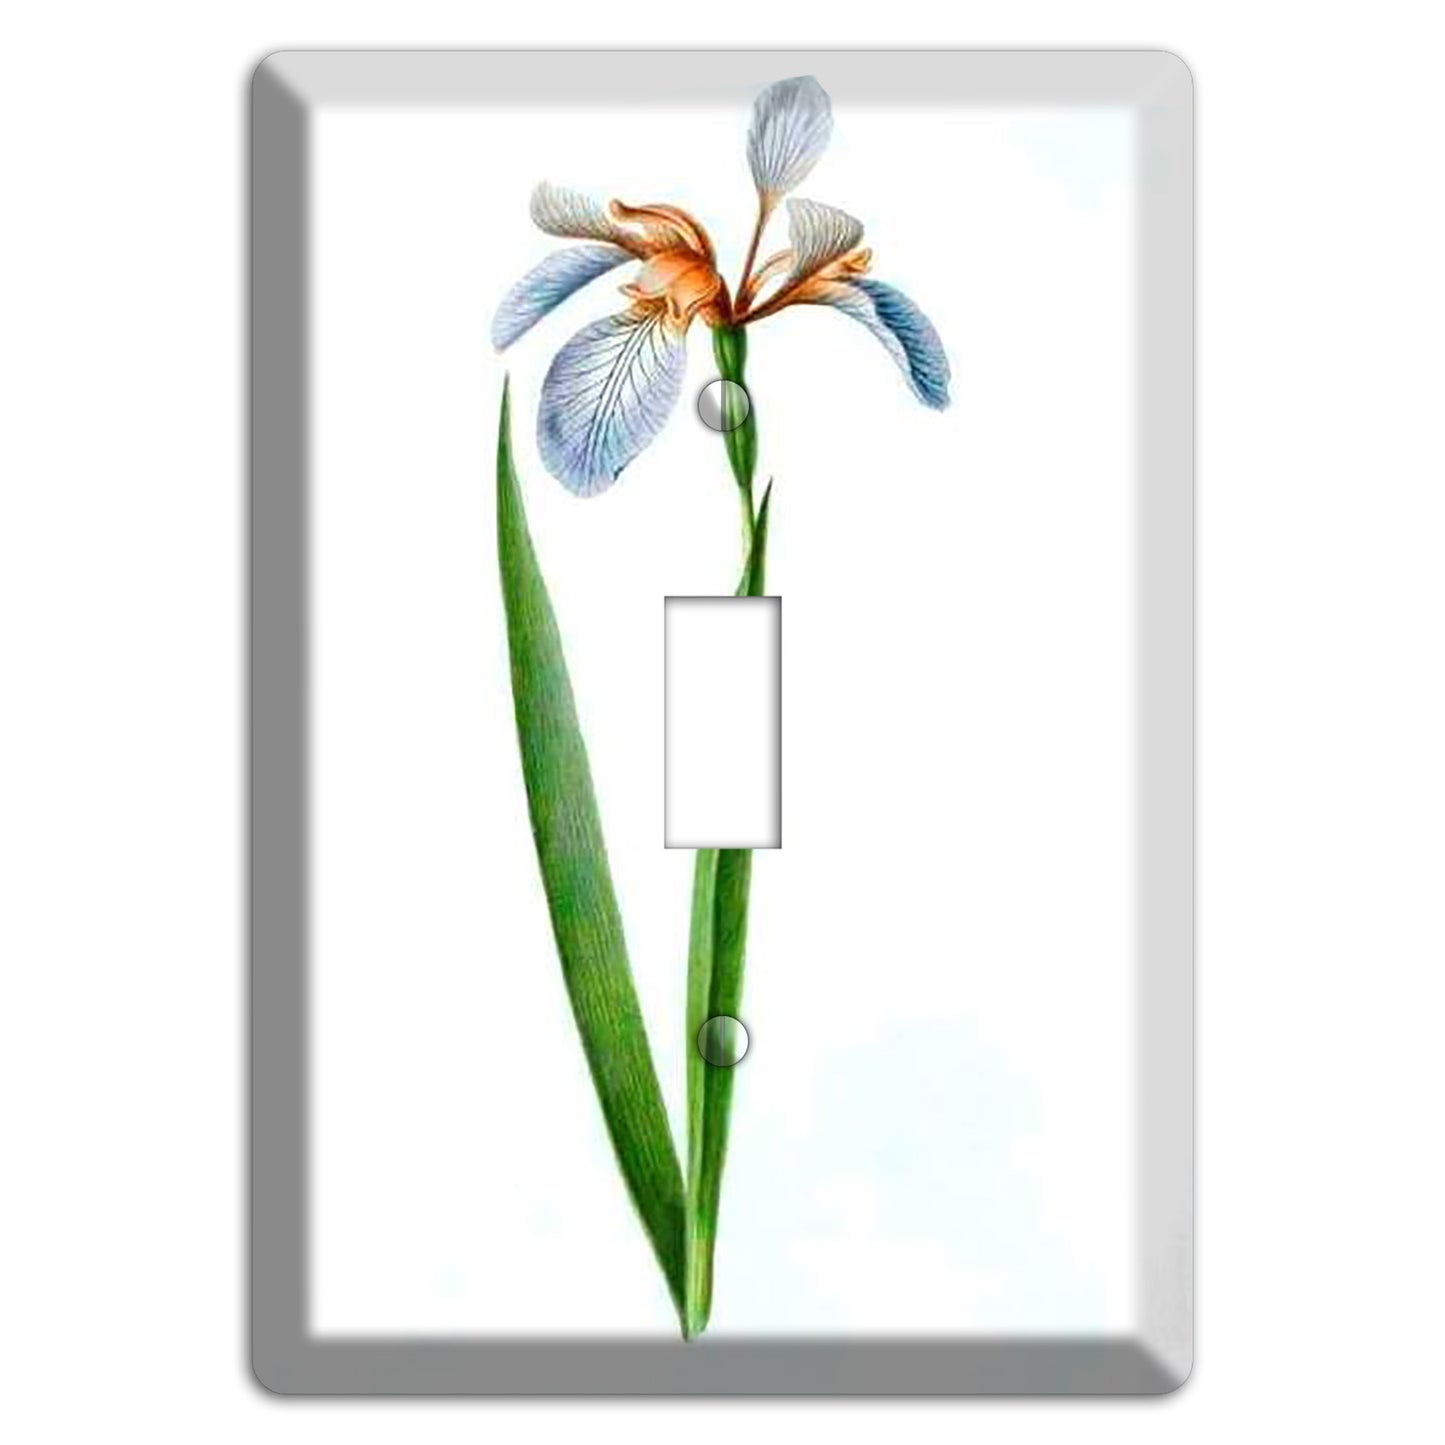 White Iris 2 Cover Plates